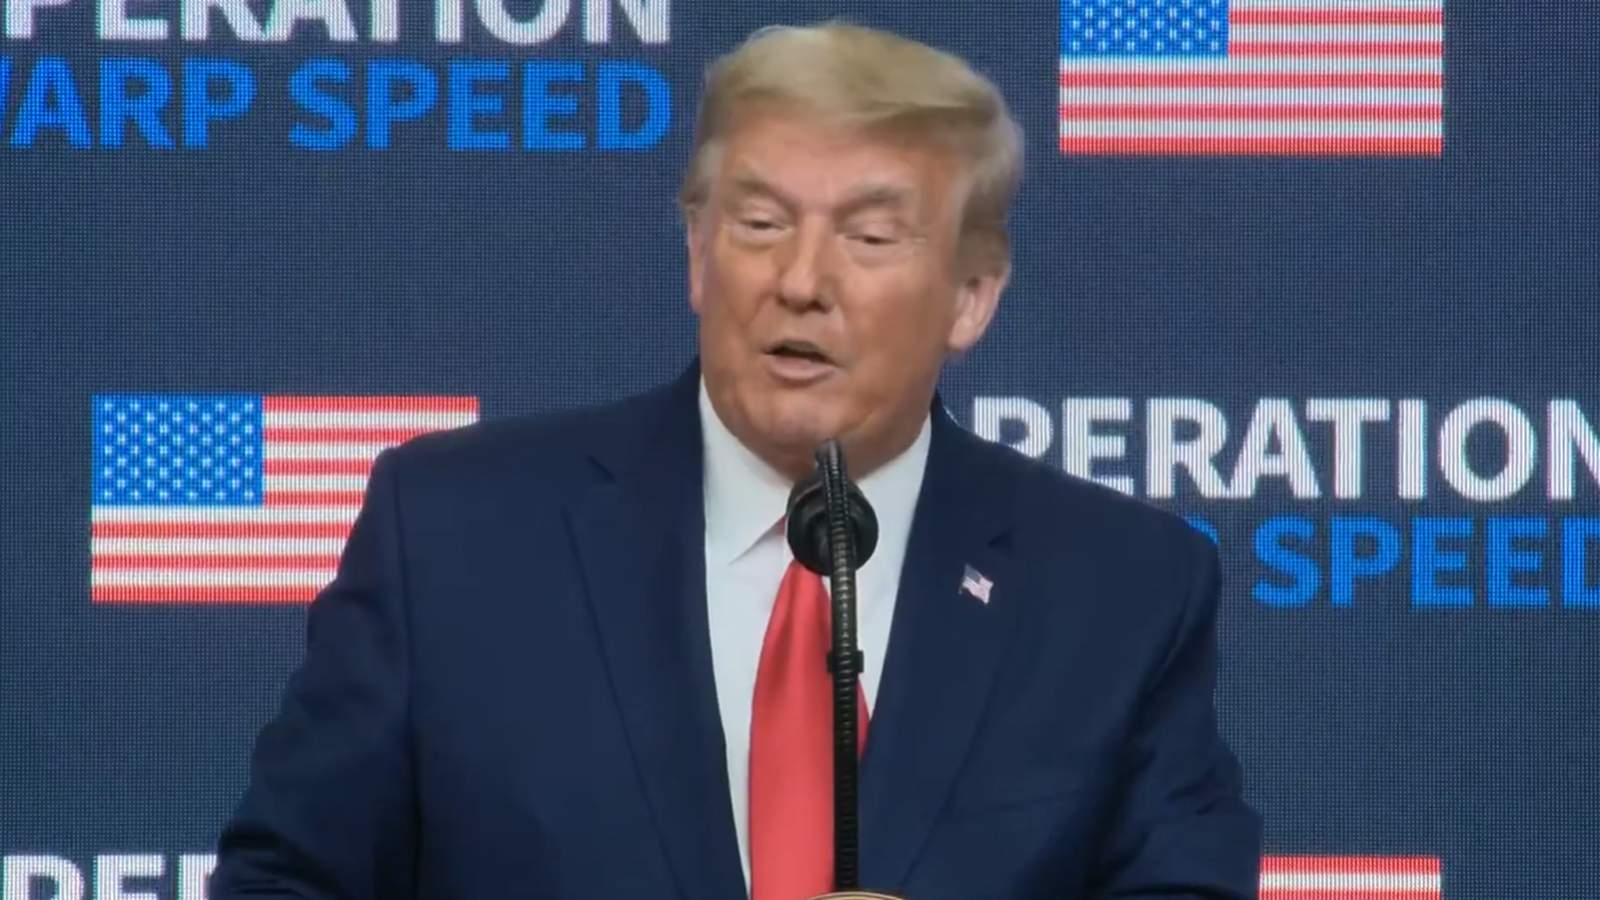 WATCH: President Trump speaks at Operation Warp Speed Vaccine Summit